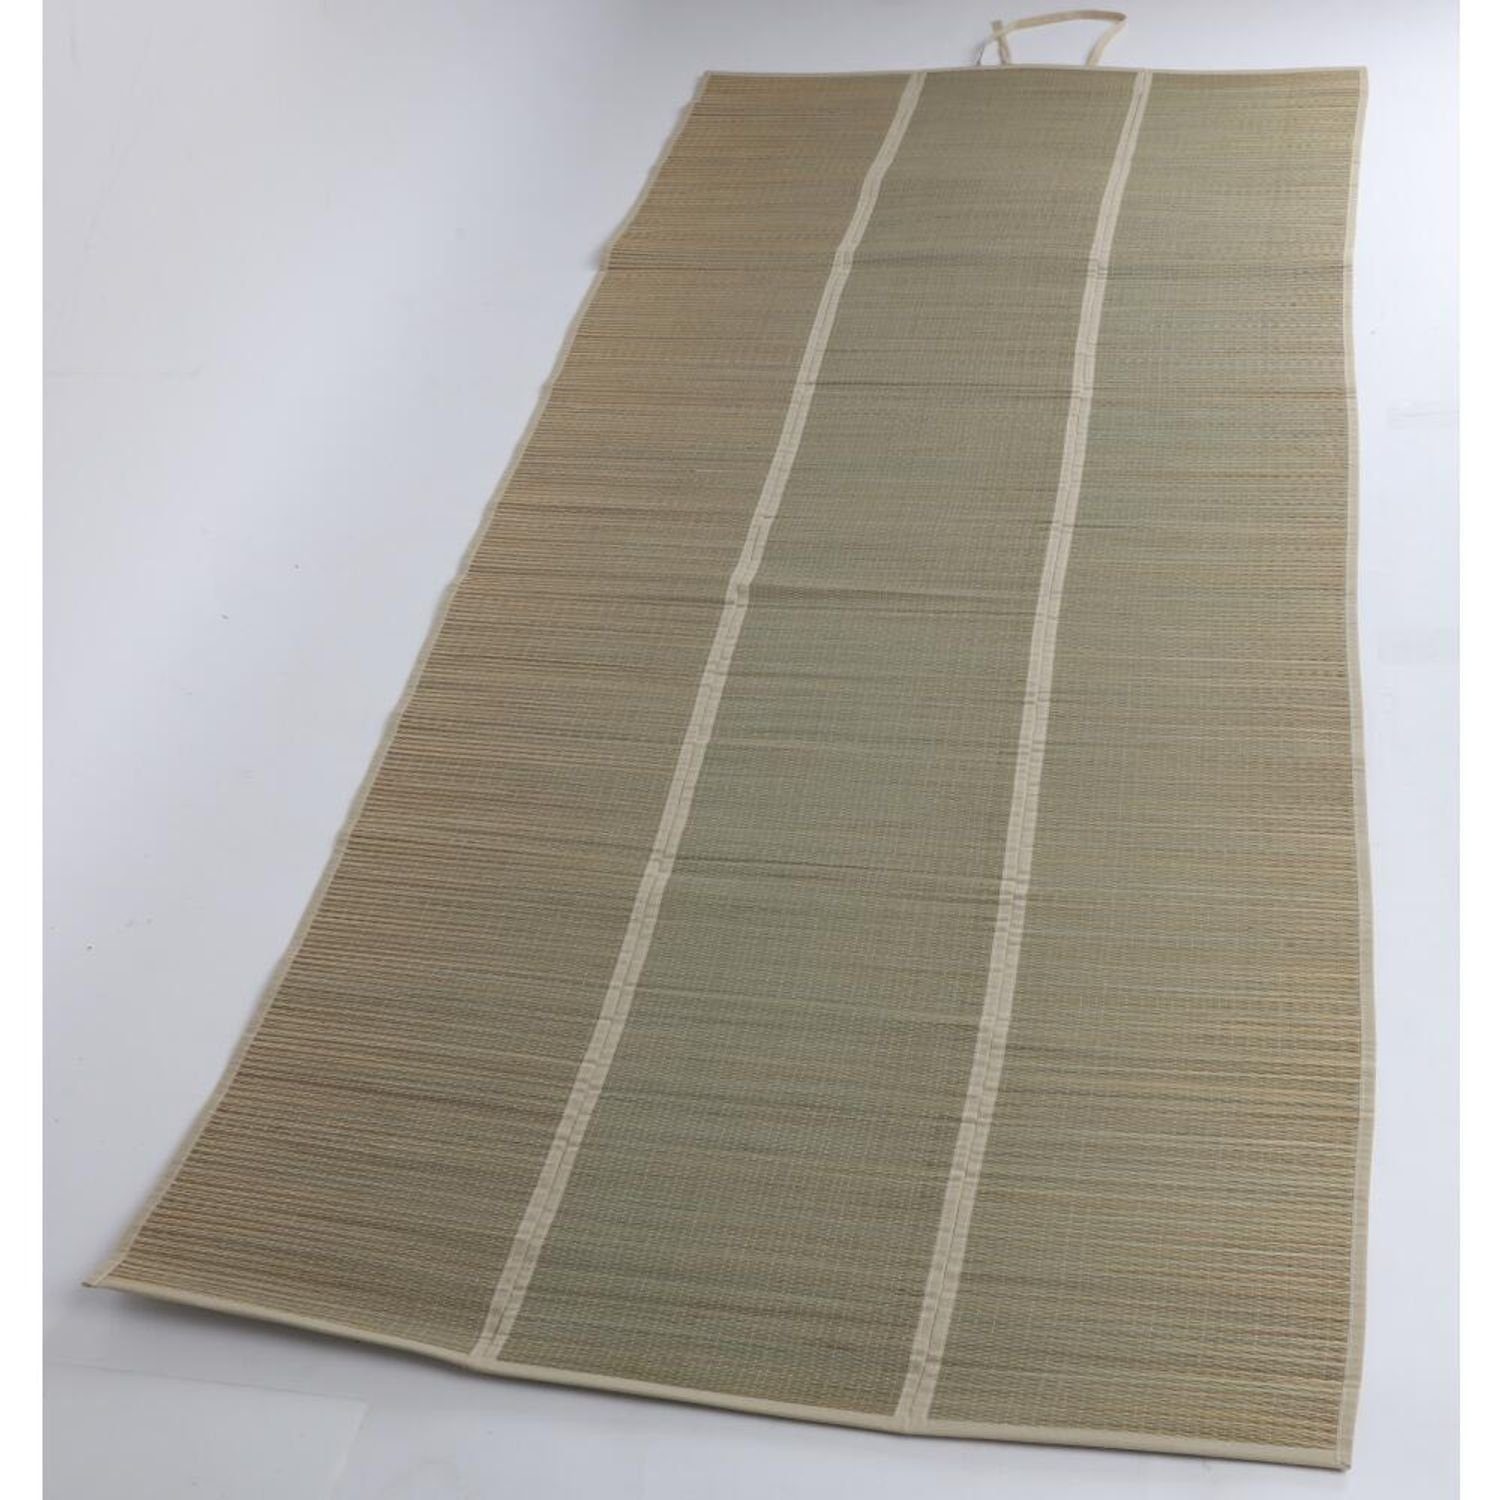 Yogamatte 90x190cm Unterlage Decken Seegras 12x Sonnenliege Strandmatte BURI Tuch